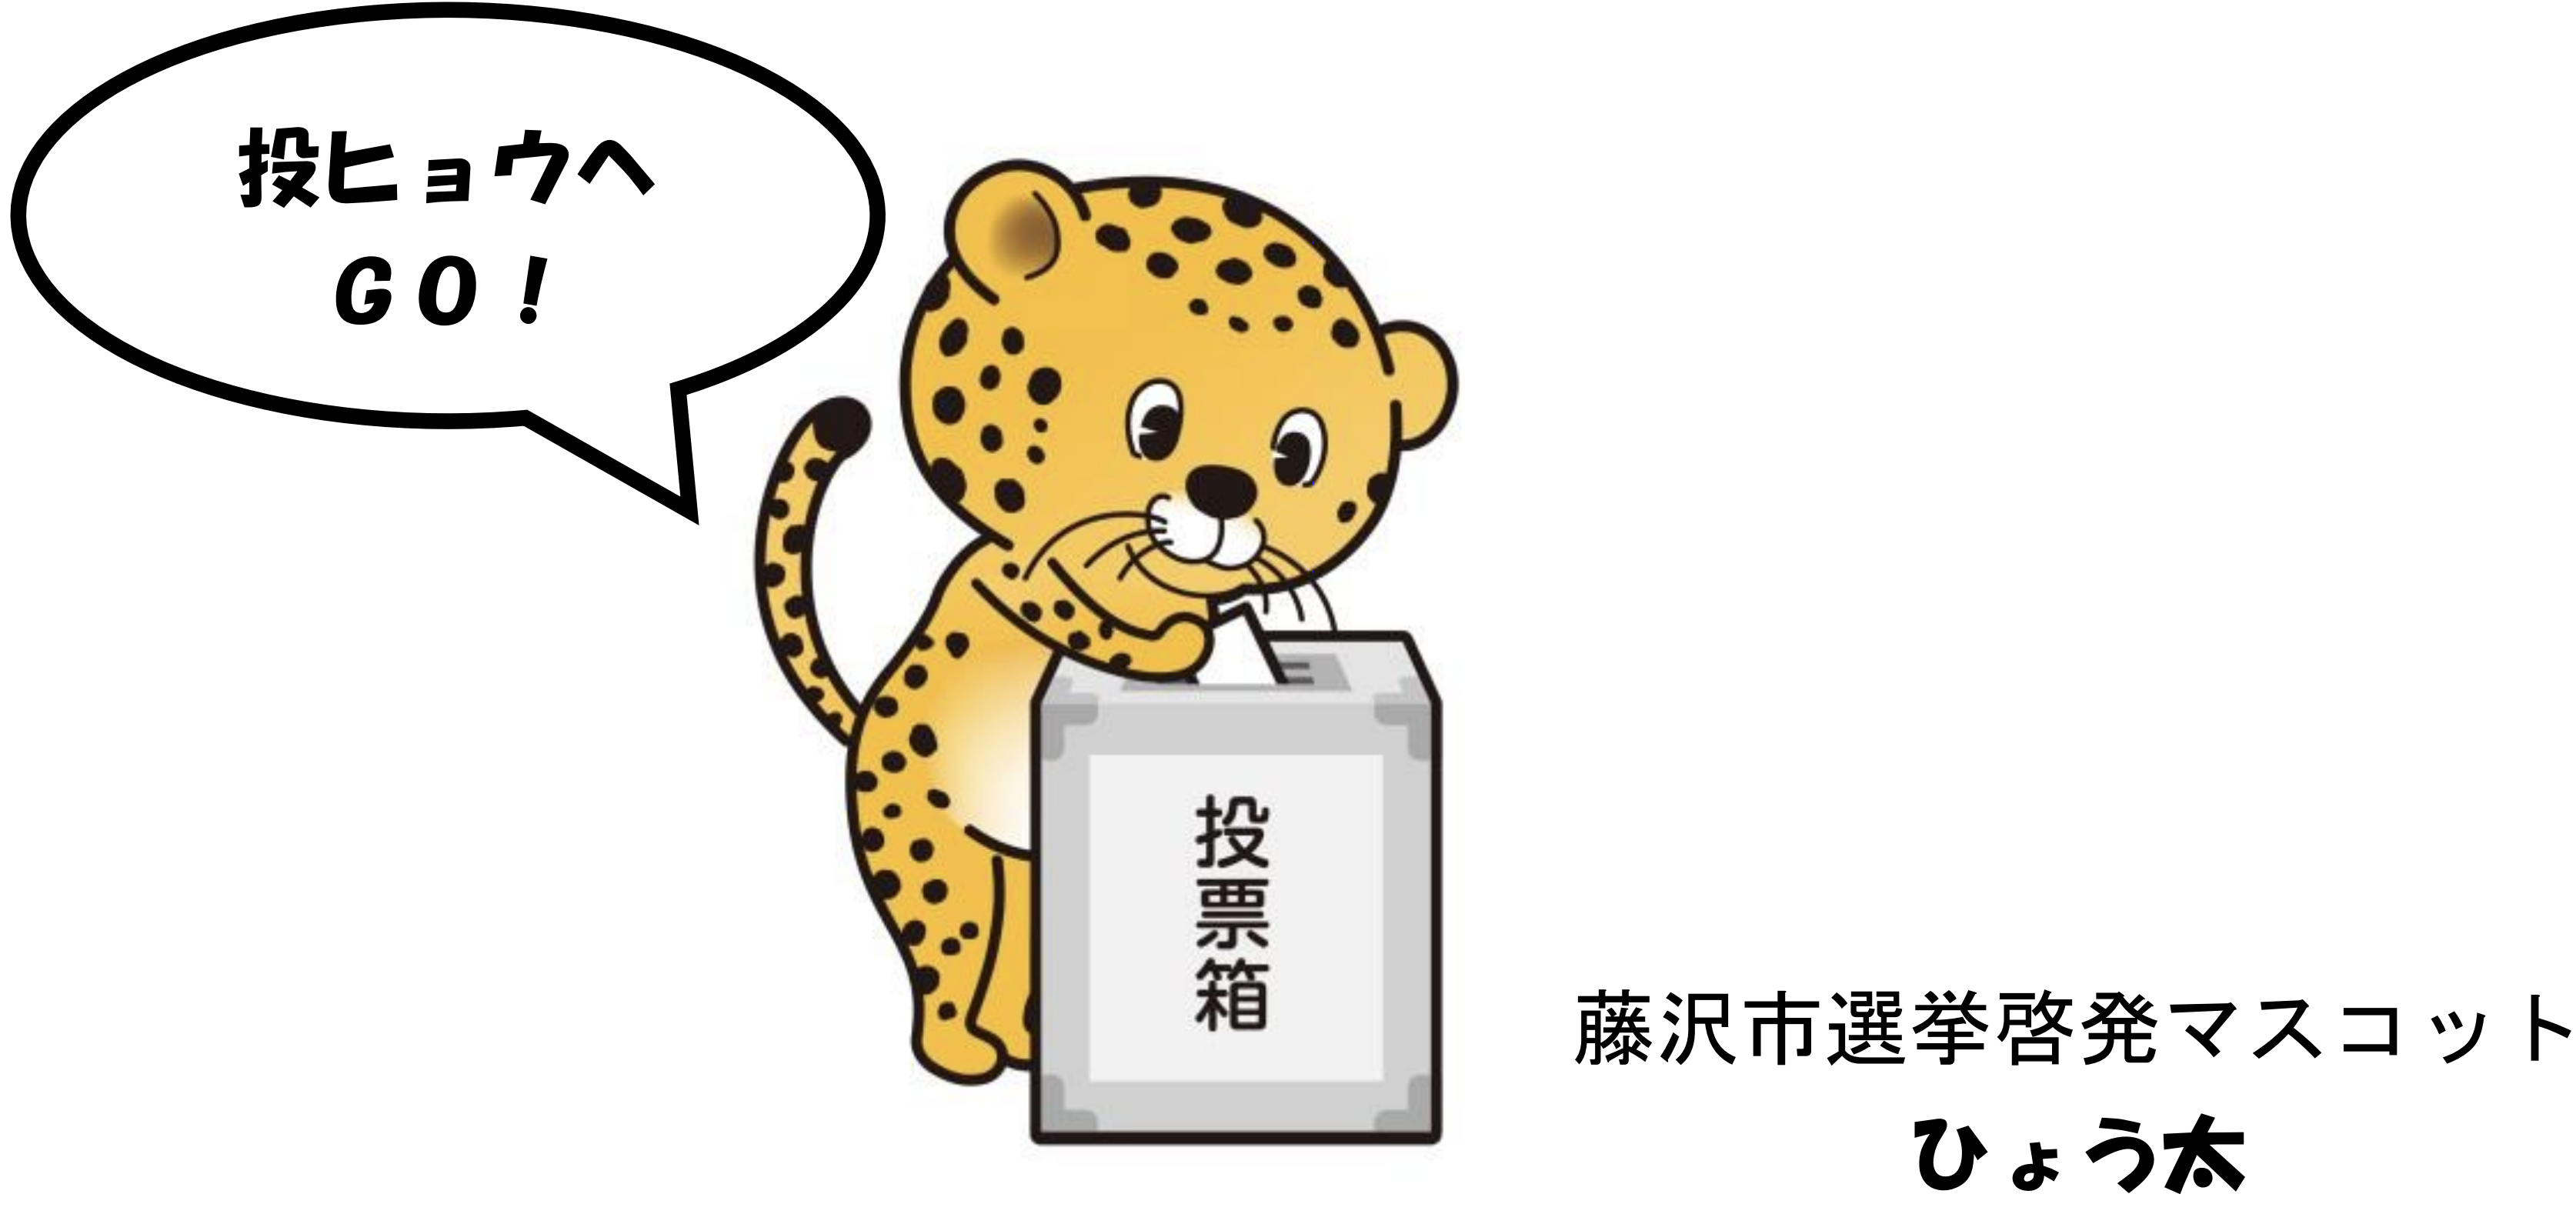 「4月21日(日)は藤沢市議会議員選挙です!」の画像